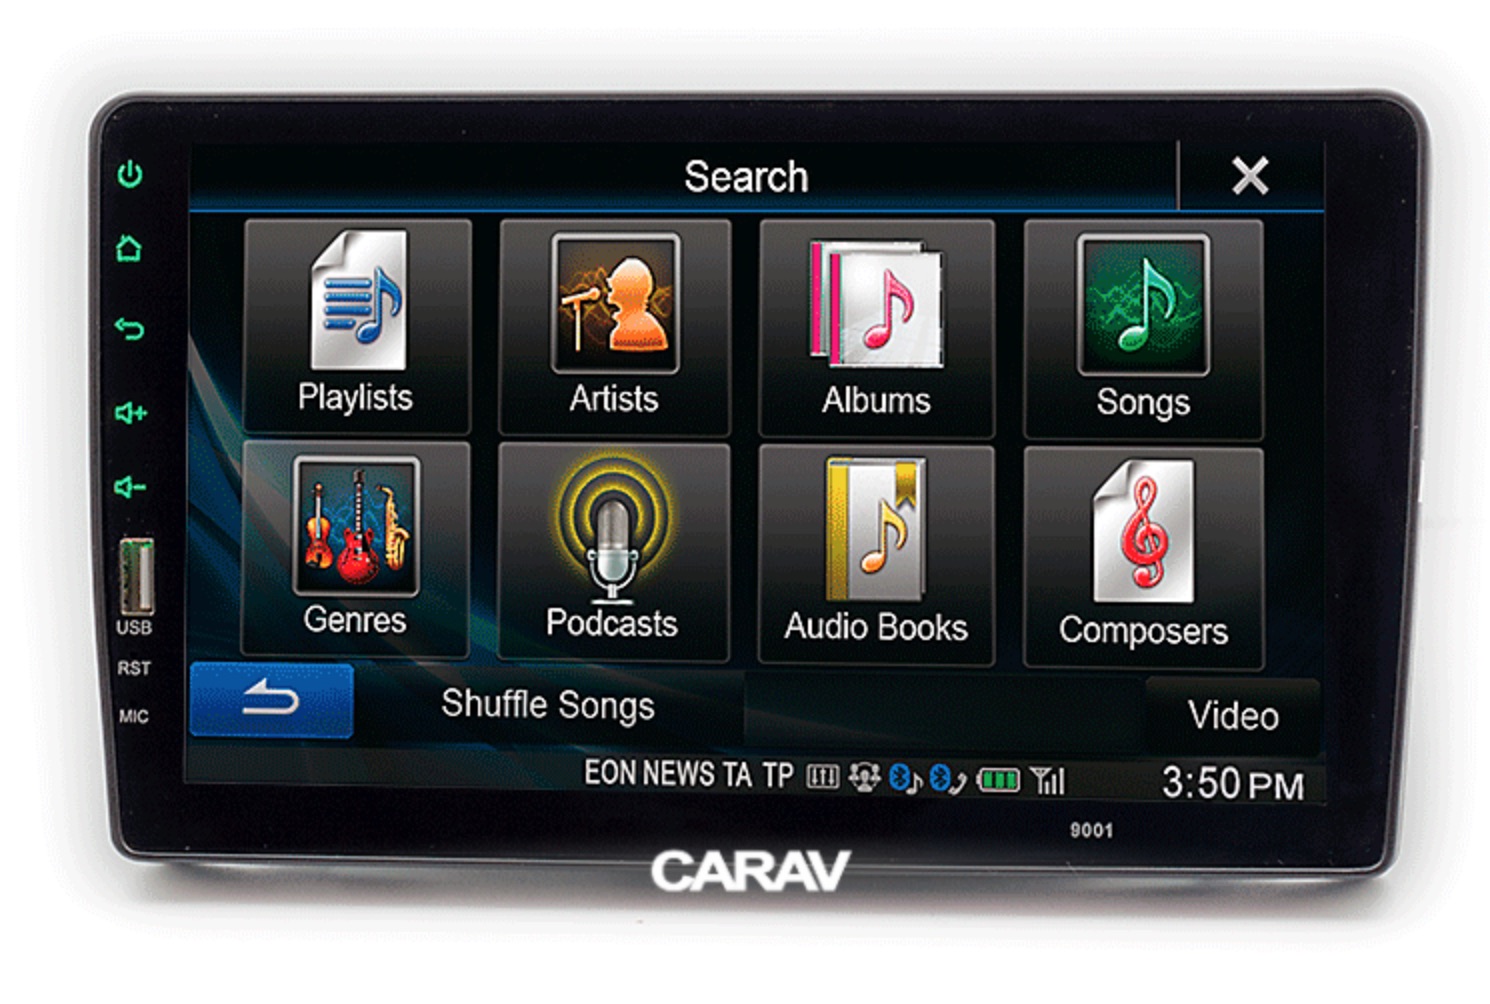 CARAV 22-091 переходная рамка Peugeot Citroen Fiat для магнитолы с экраном 9'' дюймов